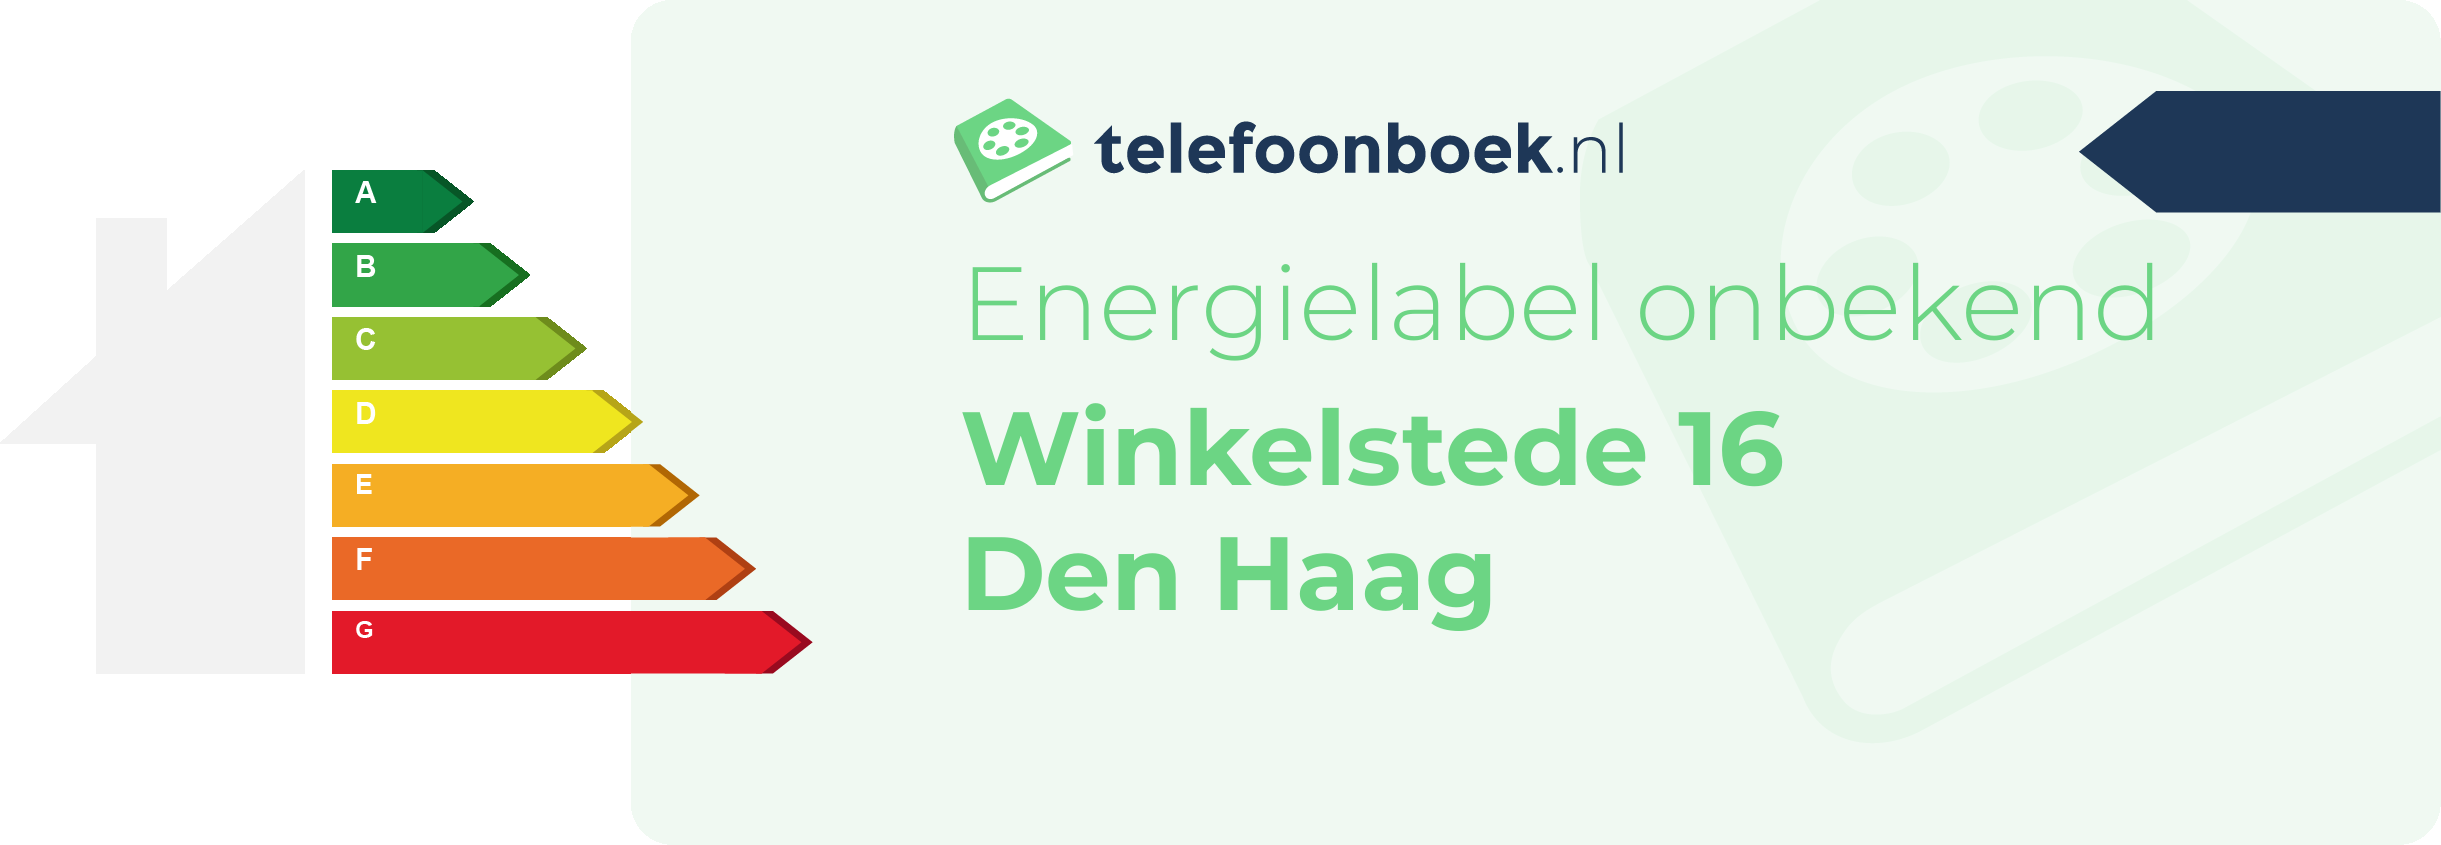 Energielabel Winkelstede 16 Den Haag